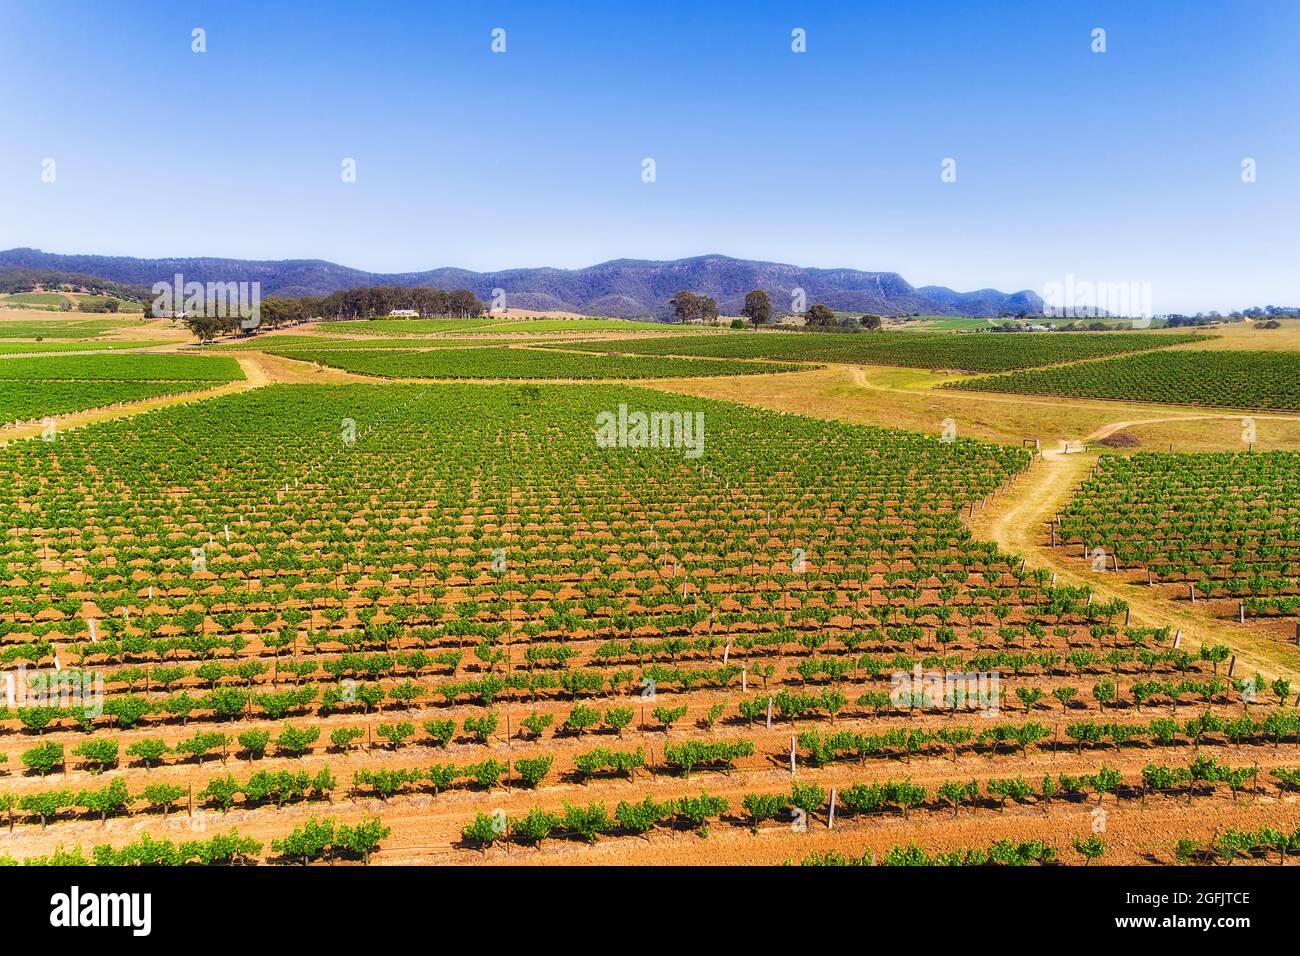 Endlose Weinberge auf berühmten Weinkellereien der australischen Hunter Valley Region - landschaftlich reizvolle Landschaft. Stockfoto